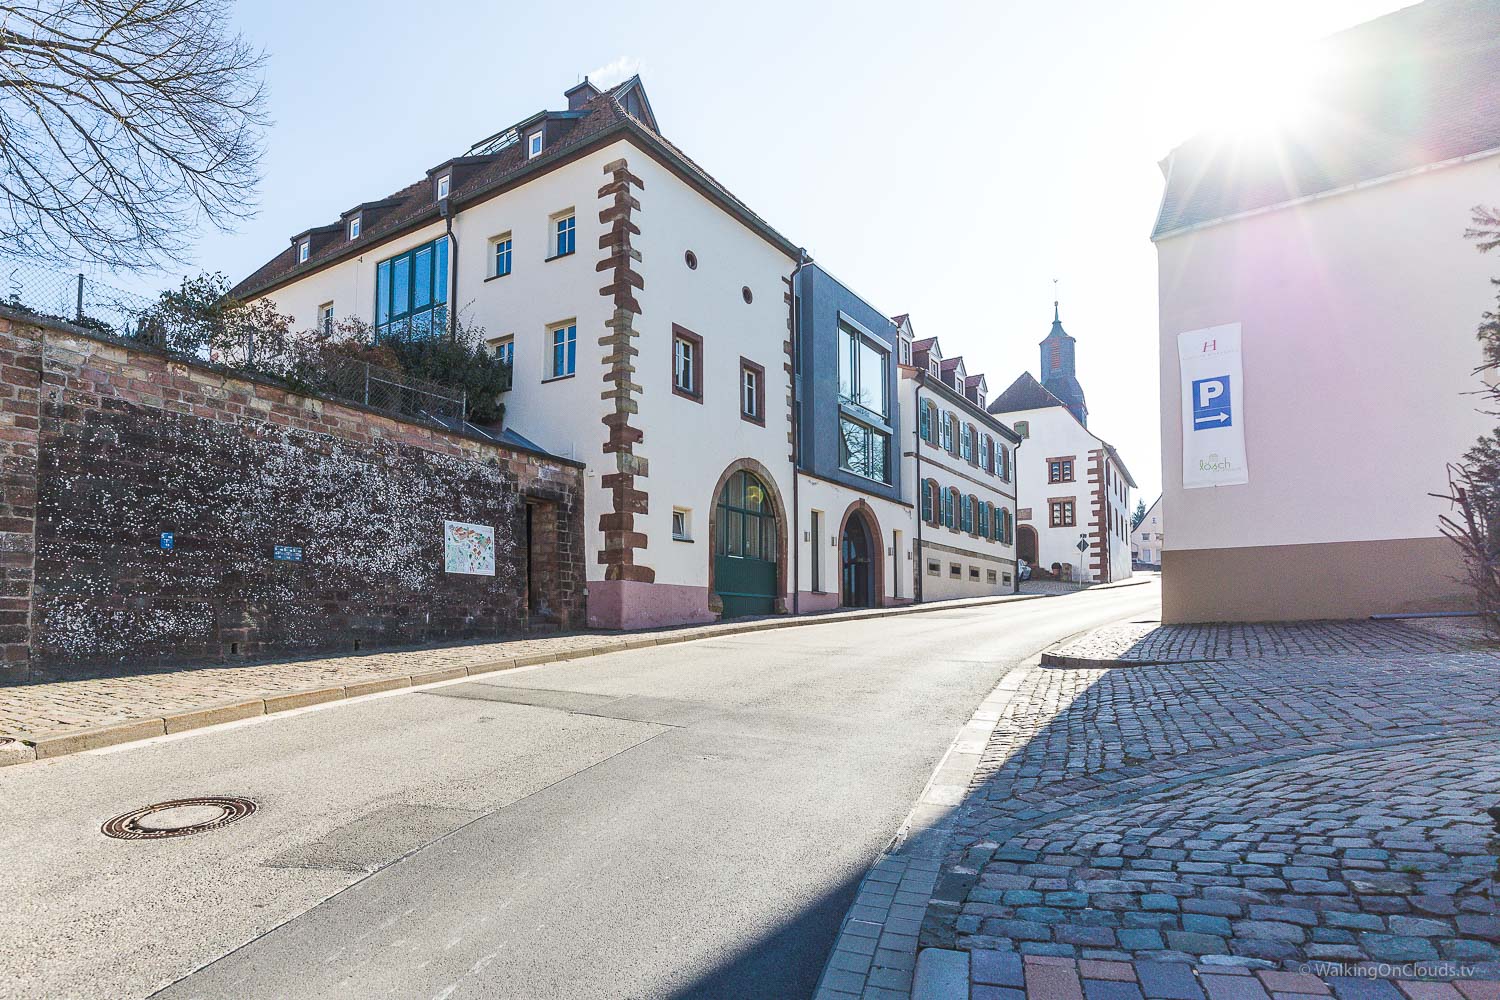 Lösch für Freunde - Best Ager Reiseblog - Kloster Hornbach - Rheinland Pfalz - Bloggerreise - Pressereise - Alleinreisende Rentnerin - Erfahrung und Eindrücke - Reiseblogger